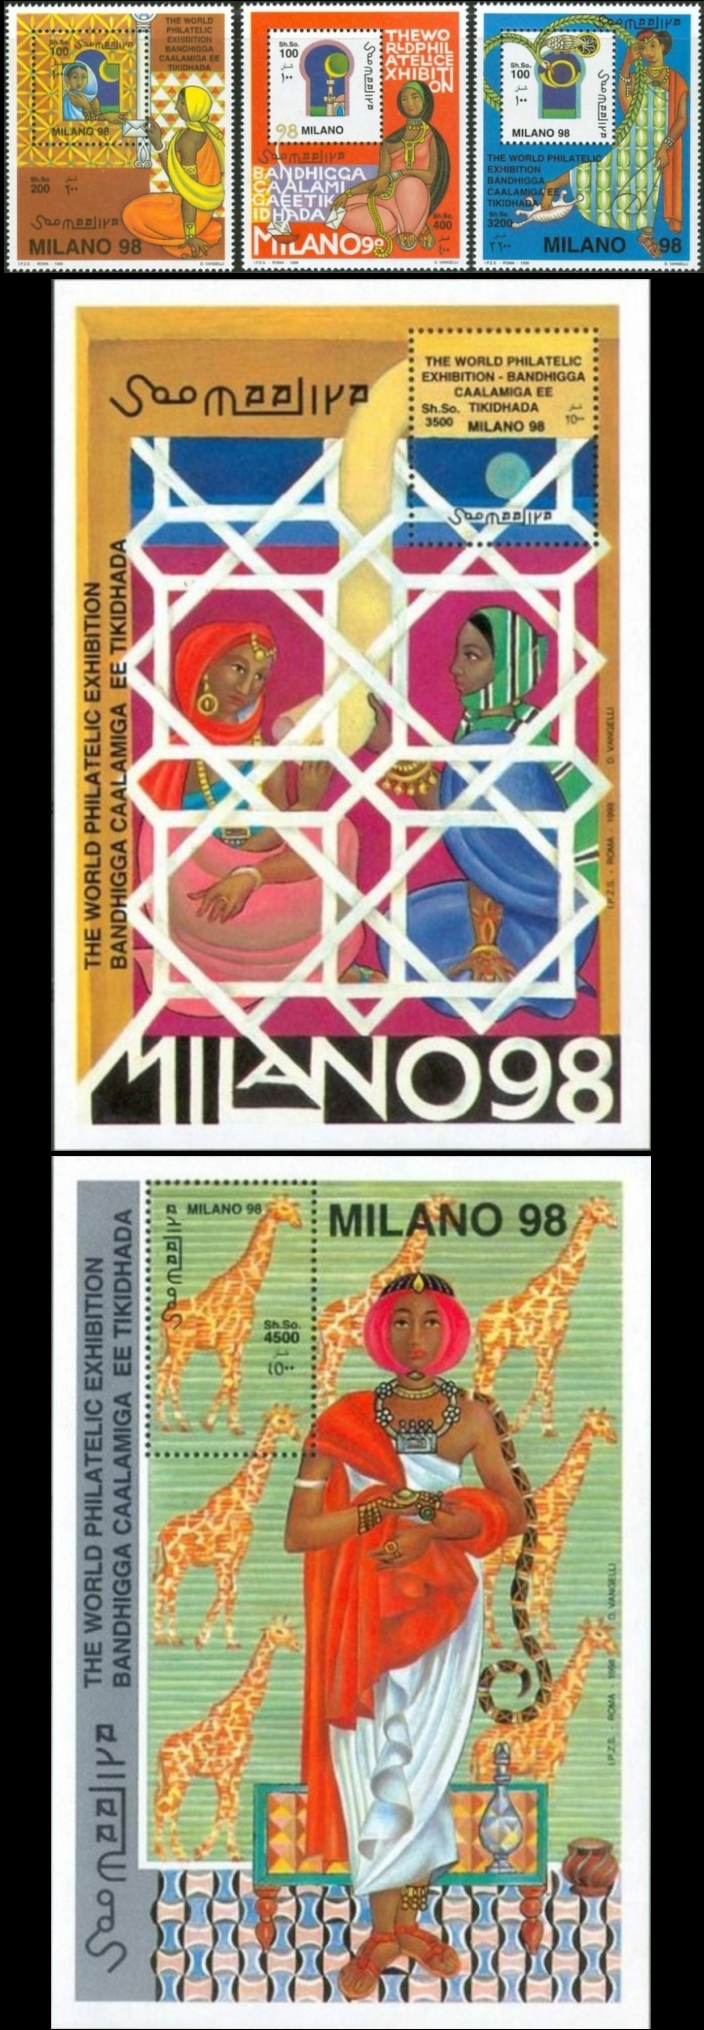 Somalia 1998 Milano 98 World Philatelic Exposition Michel 688-690 BL 48 and BL 49